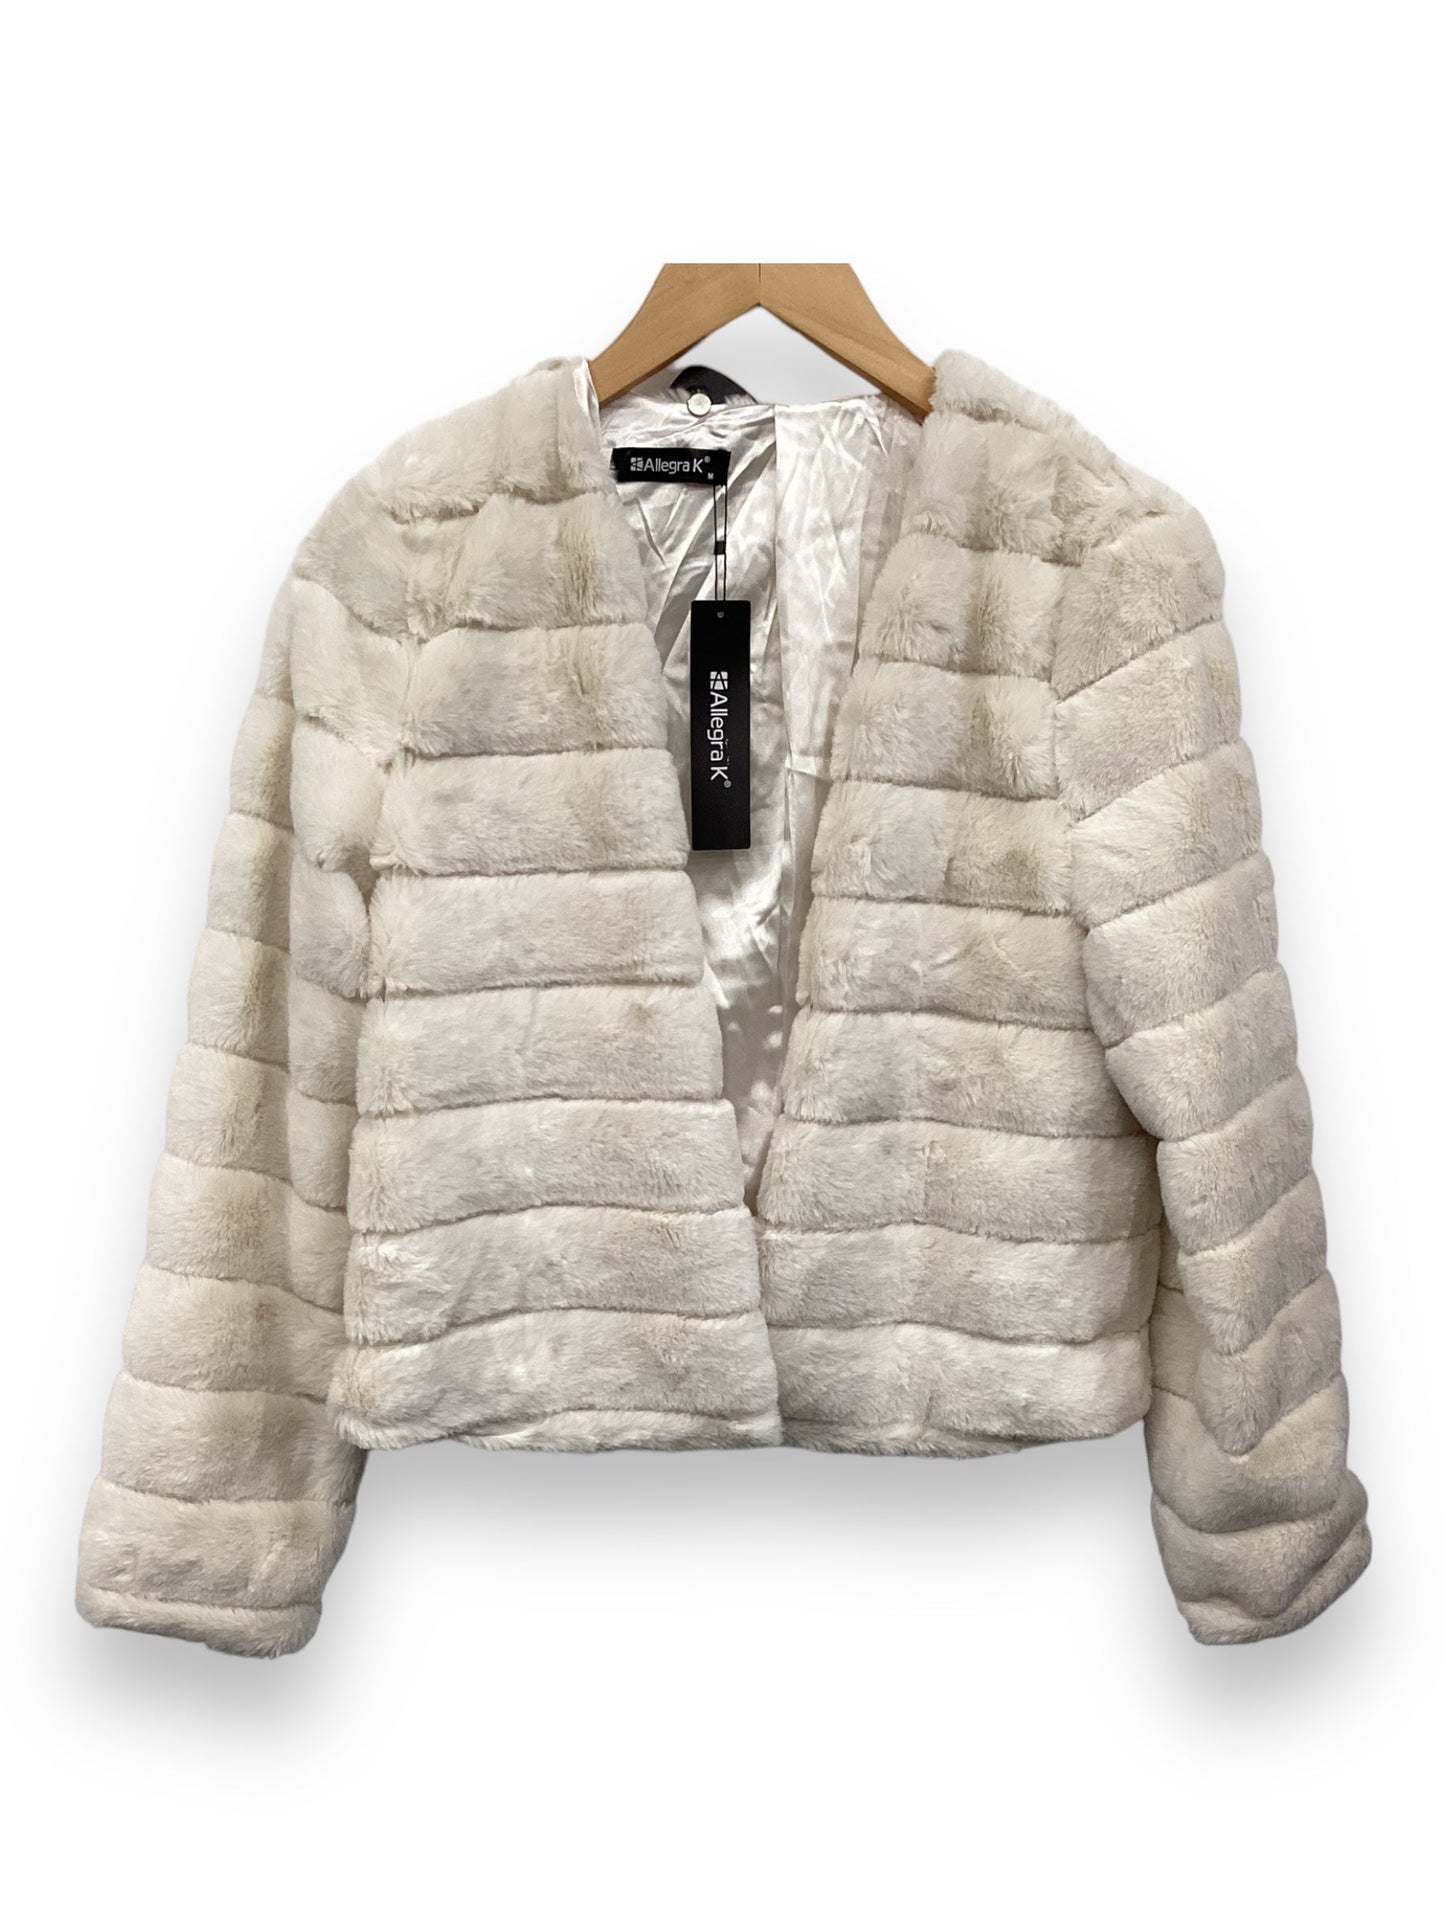 White Jacket Faux Fur & Sherpa Allegra K, Size M